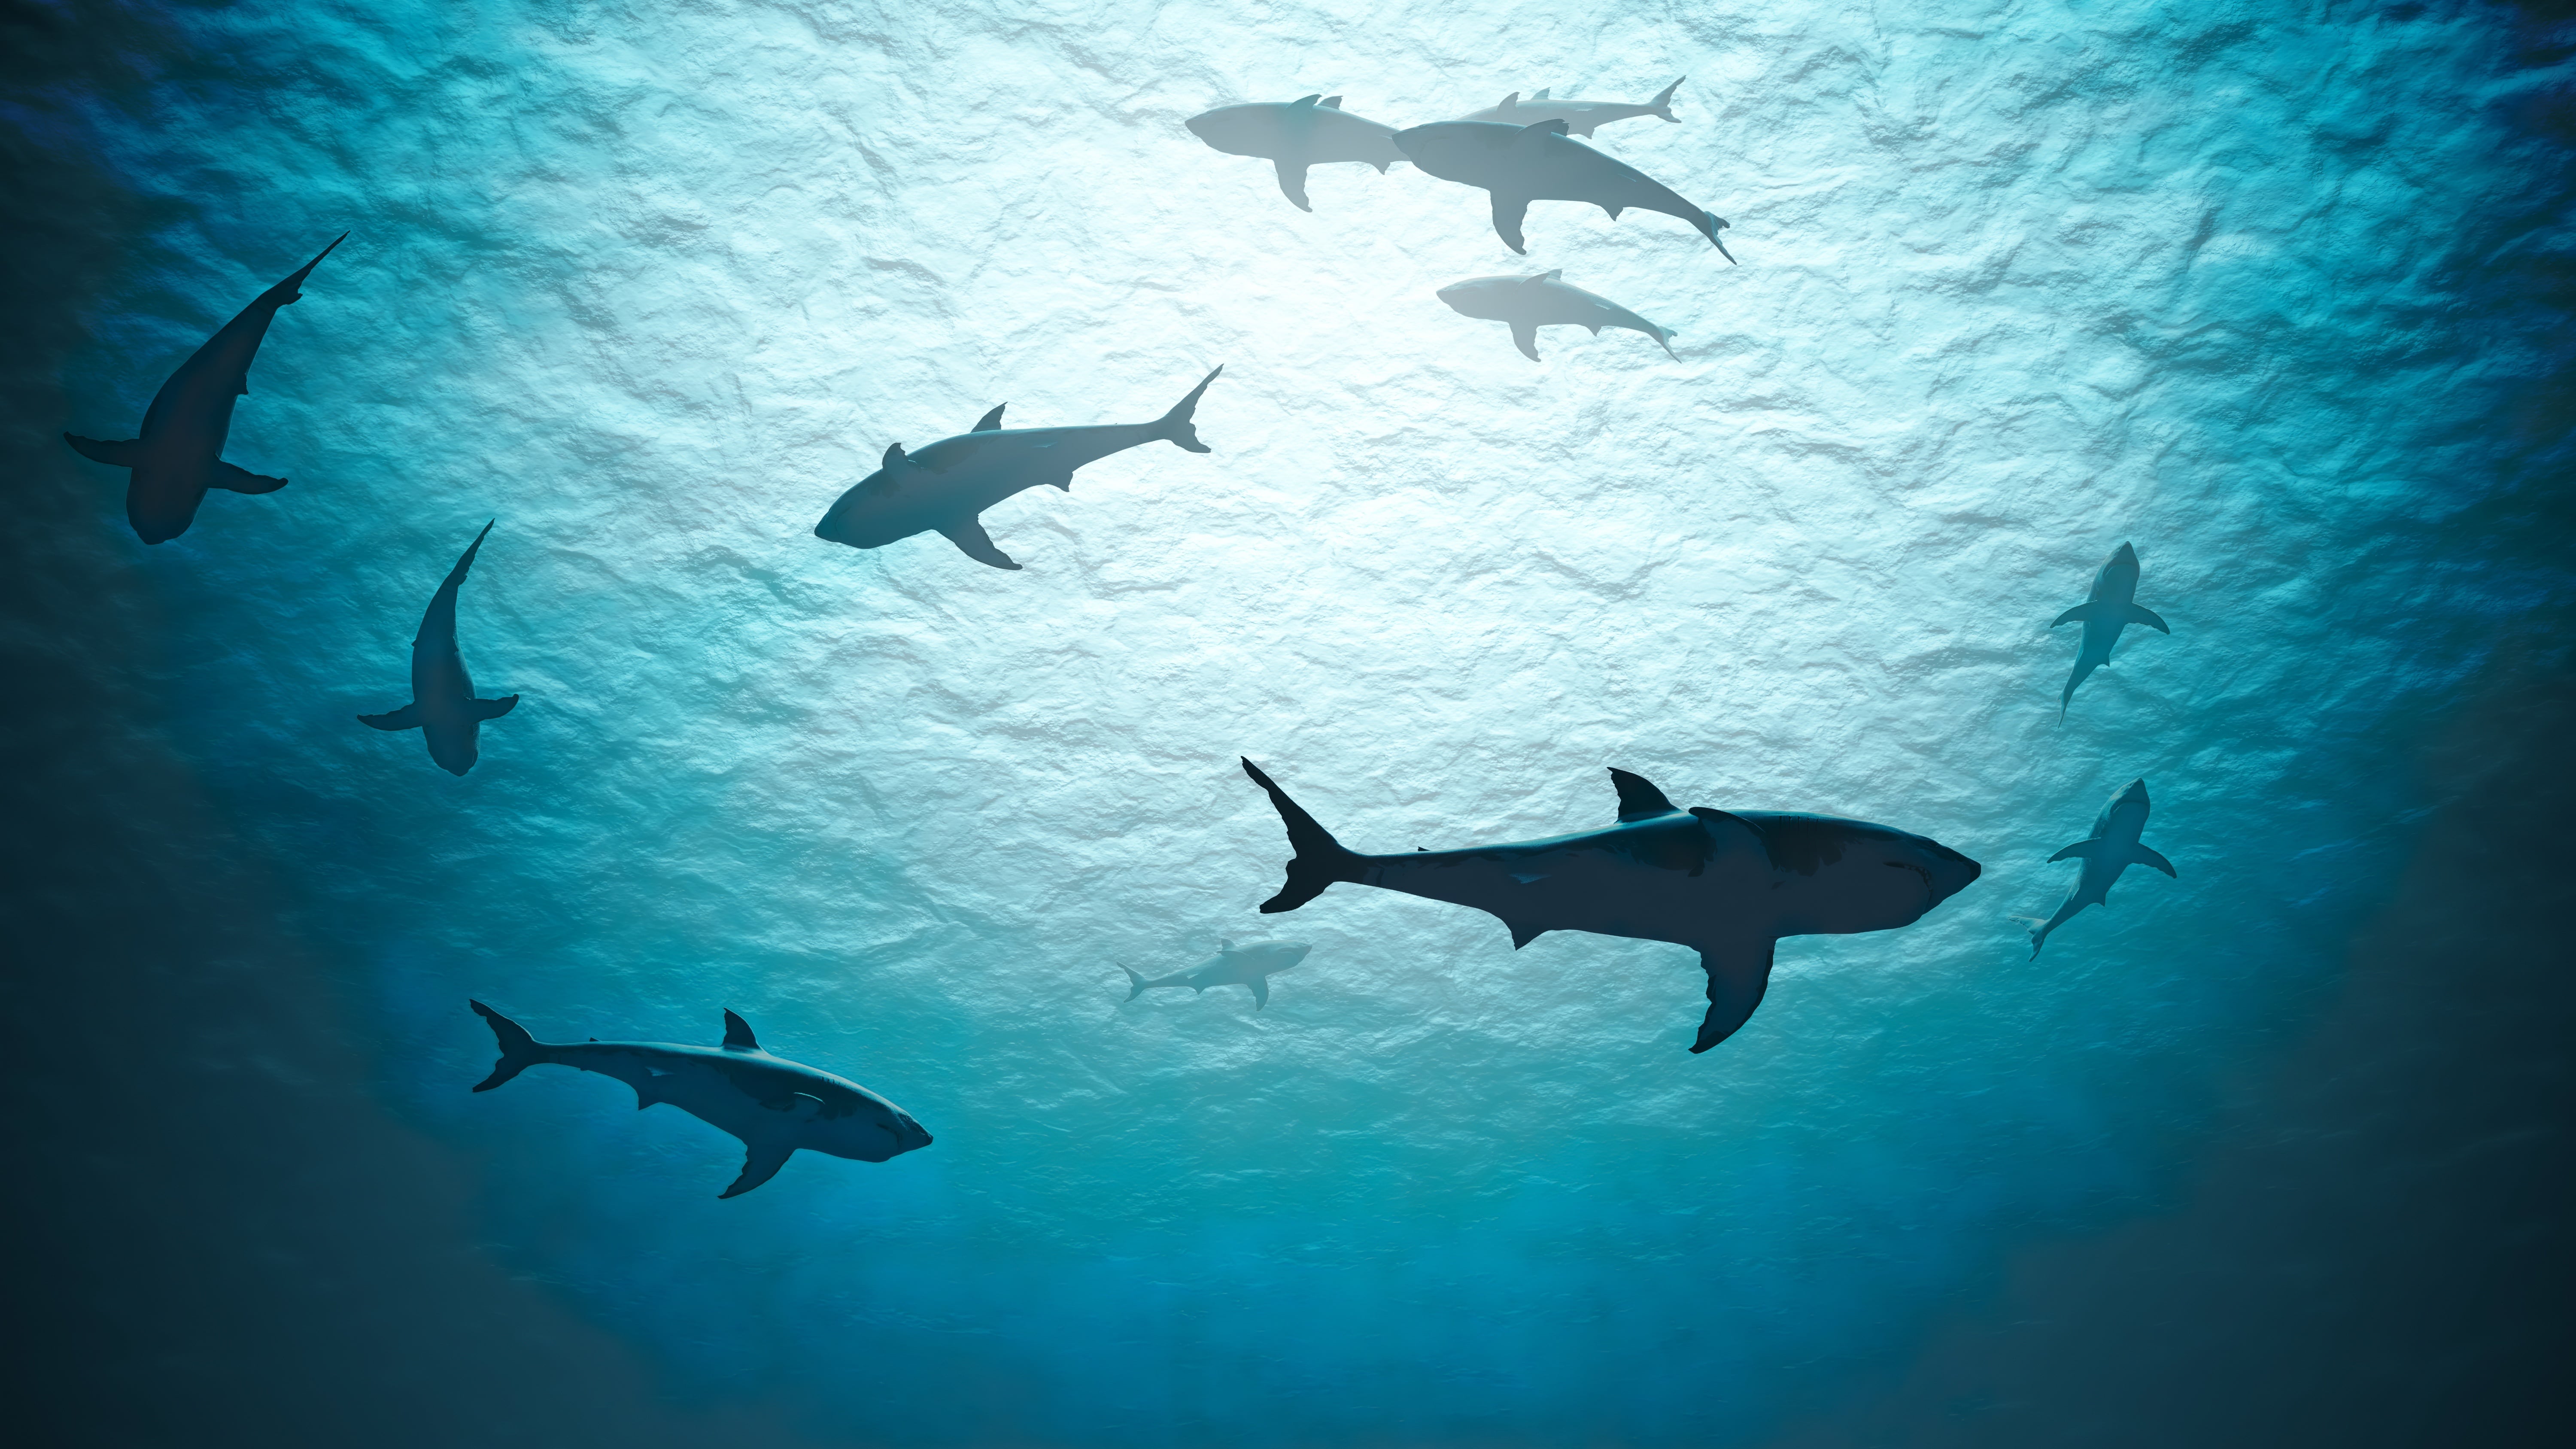 Les requins souffrent d'une mauvaise réputation. En sensibilisant les plongeurs sur leur comportement et leur mode de vie, Shark Education espère redorer l'image de ces animaux fascinants particulièrement menacés. © Vchalup, Adobe Stock